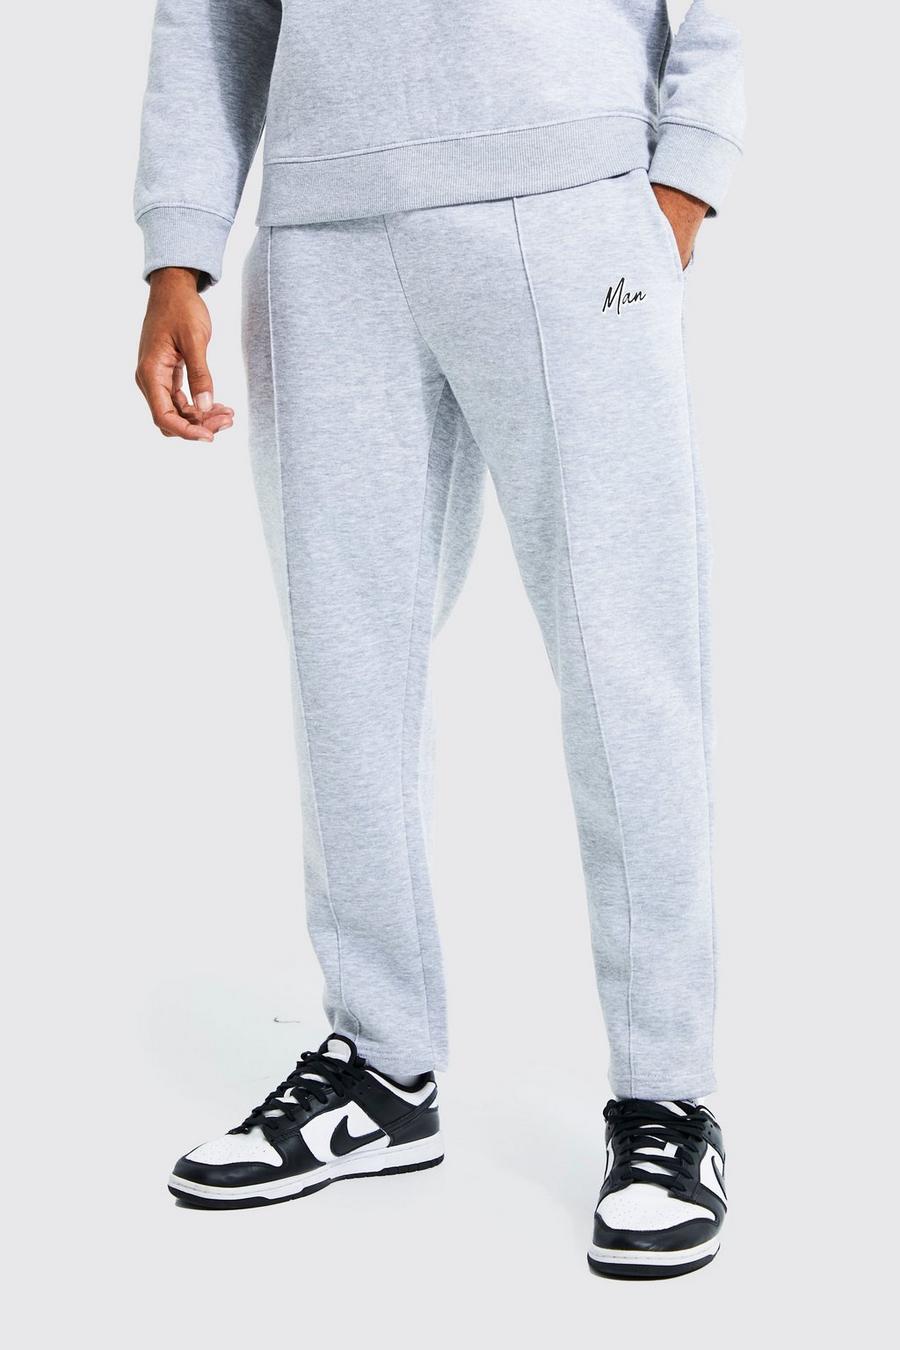 Pantalón deportivo MAN ajustado con alforza, Grey grigio